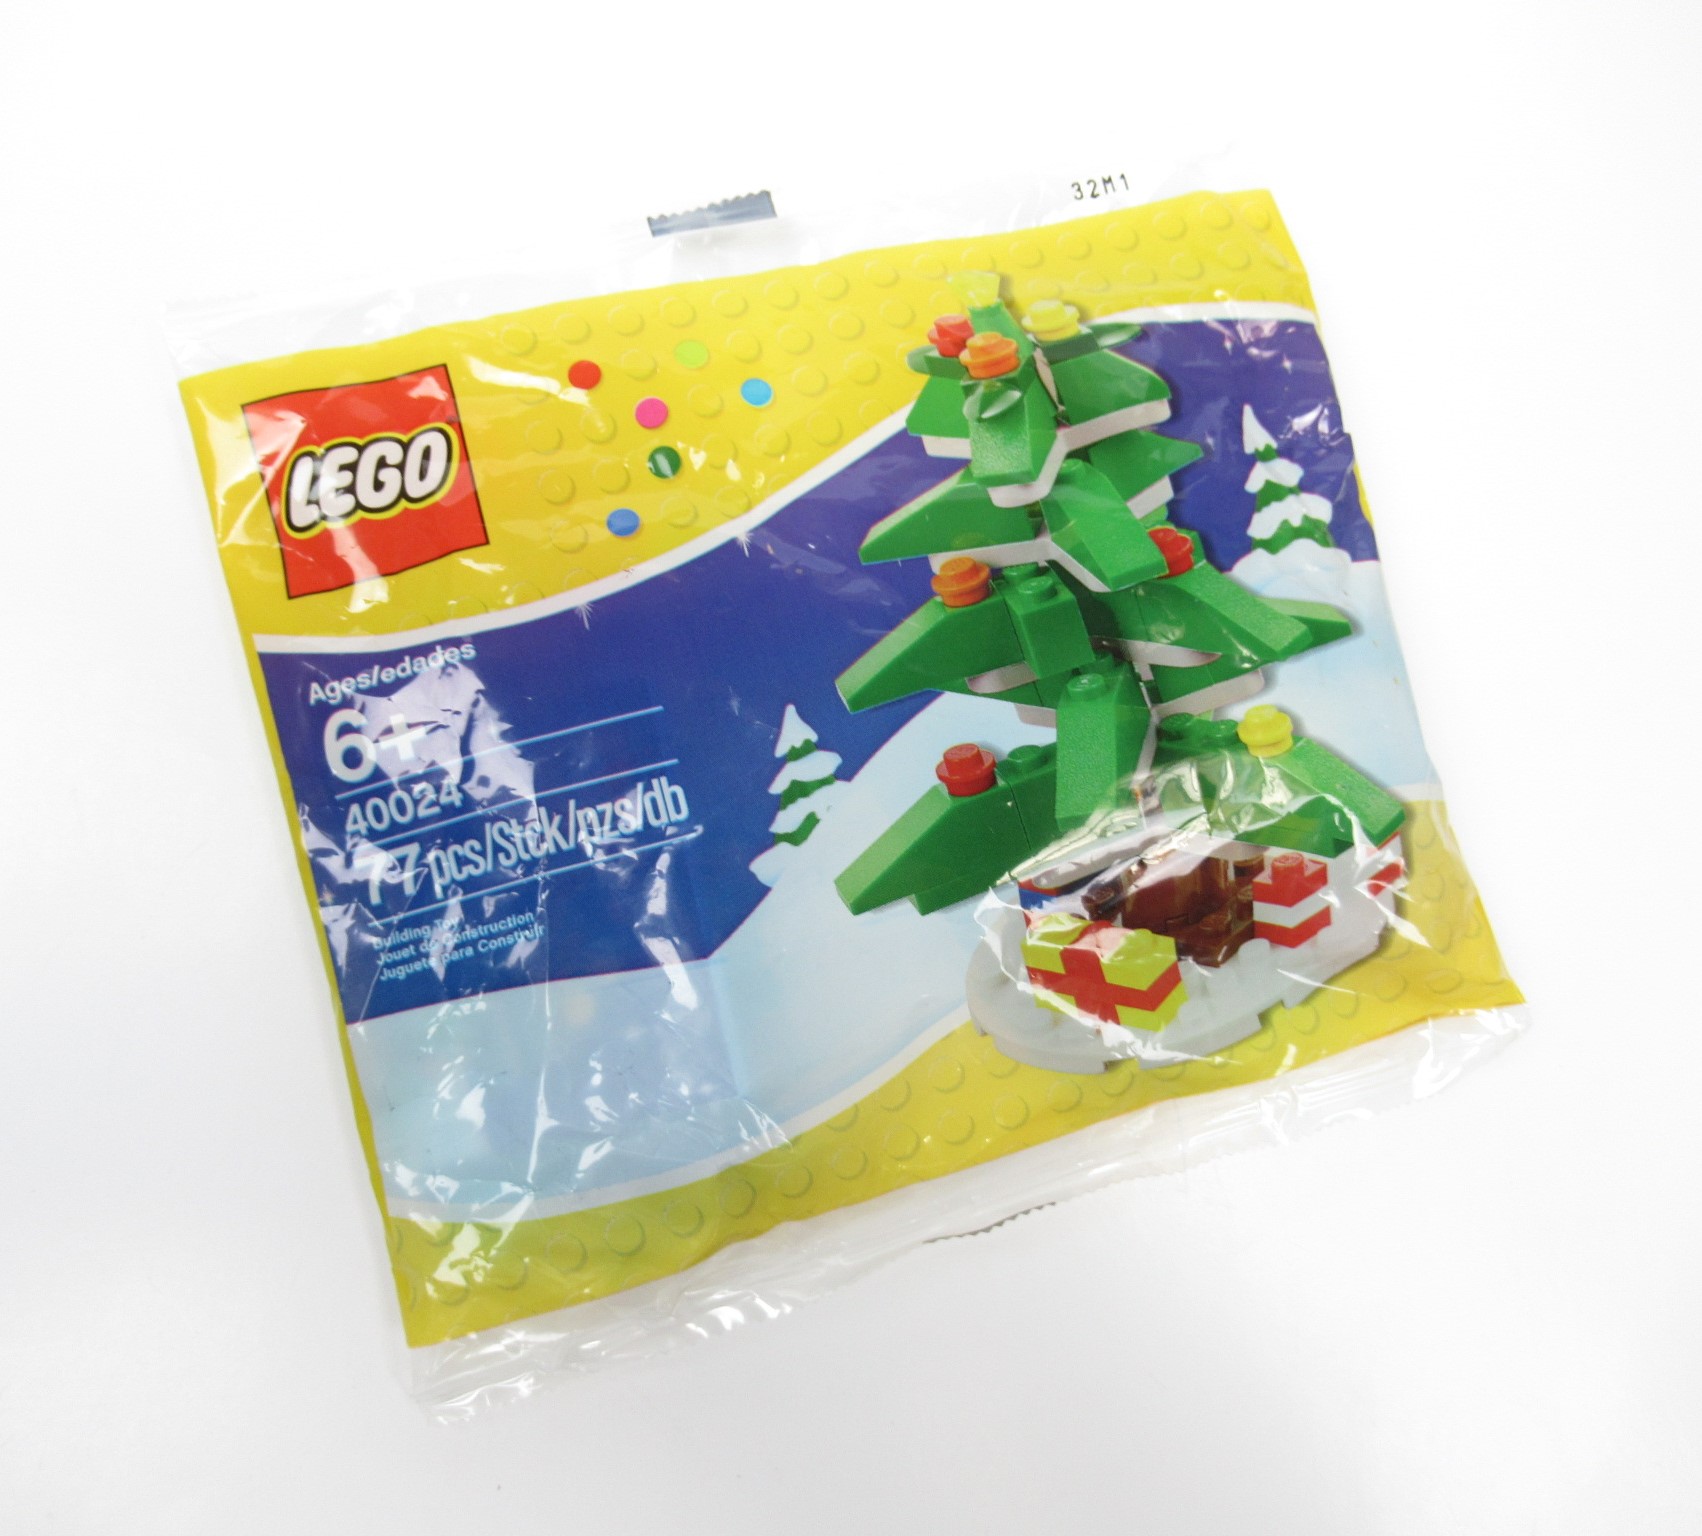 Resmi LEGO Creator - 40024 Weihnachtsbaum Polybag